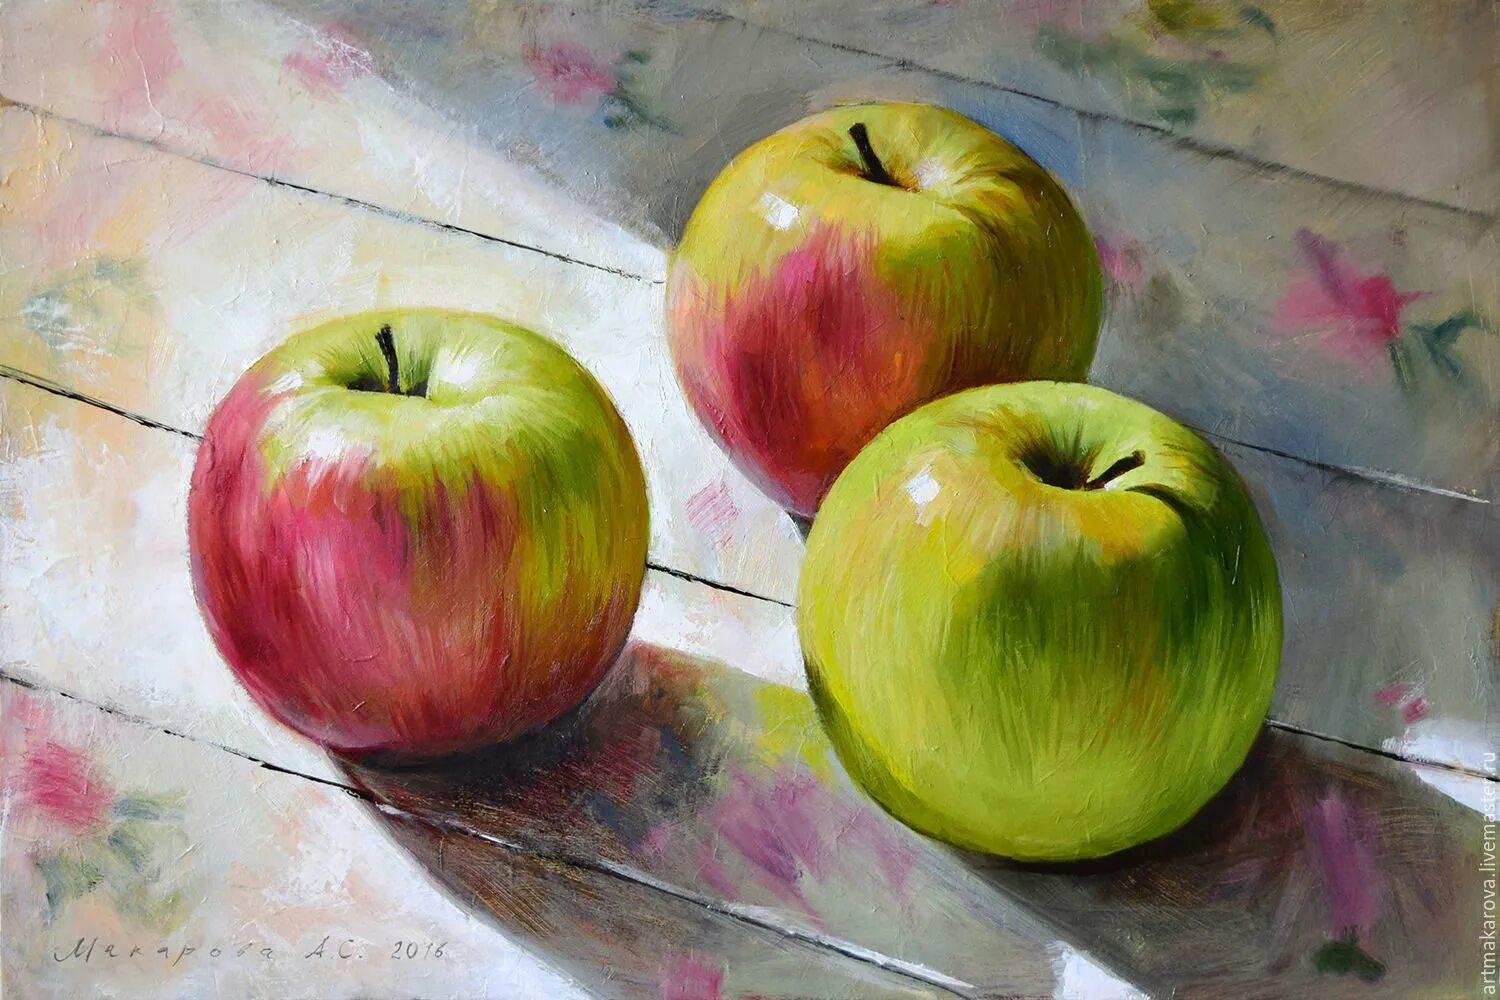 Натура 6 букв. Натюрморт Дэвид Джерман яблоки. Натюрморт с яблоками. Яблоки живопись. Натюрморт живопись.